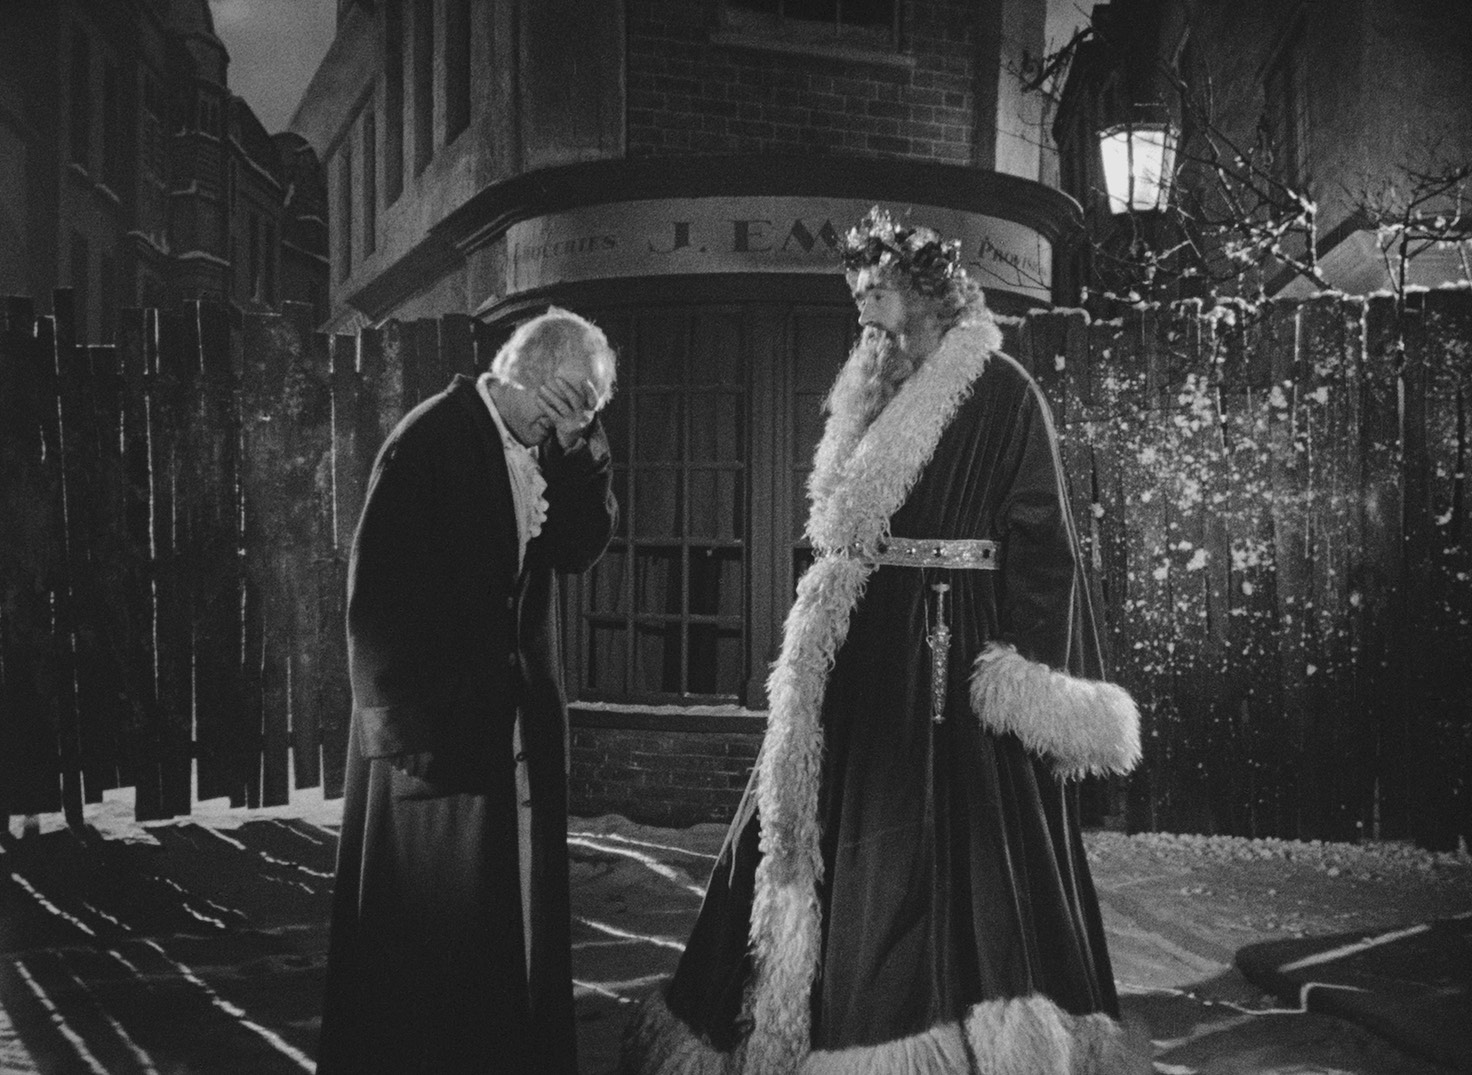 Scrooge 1951